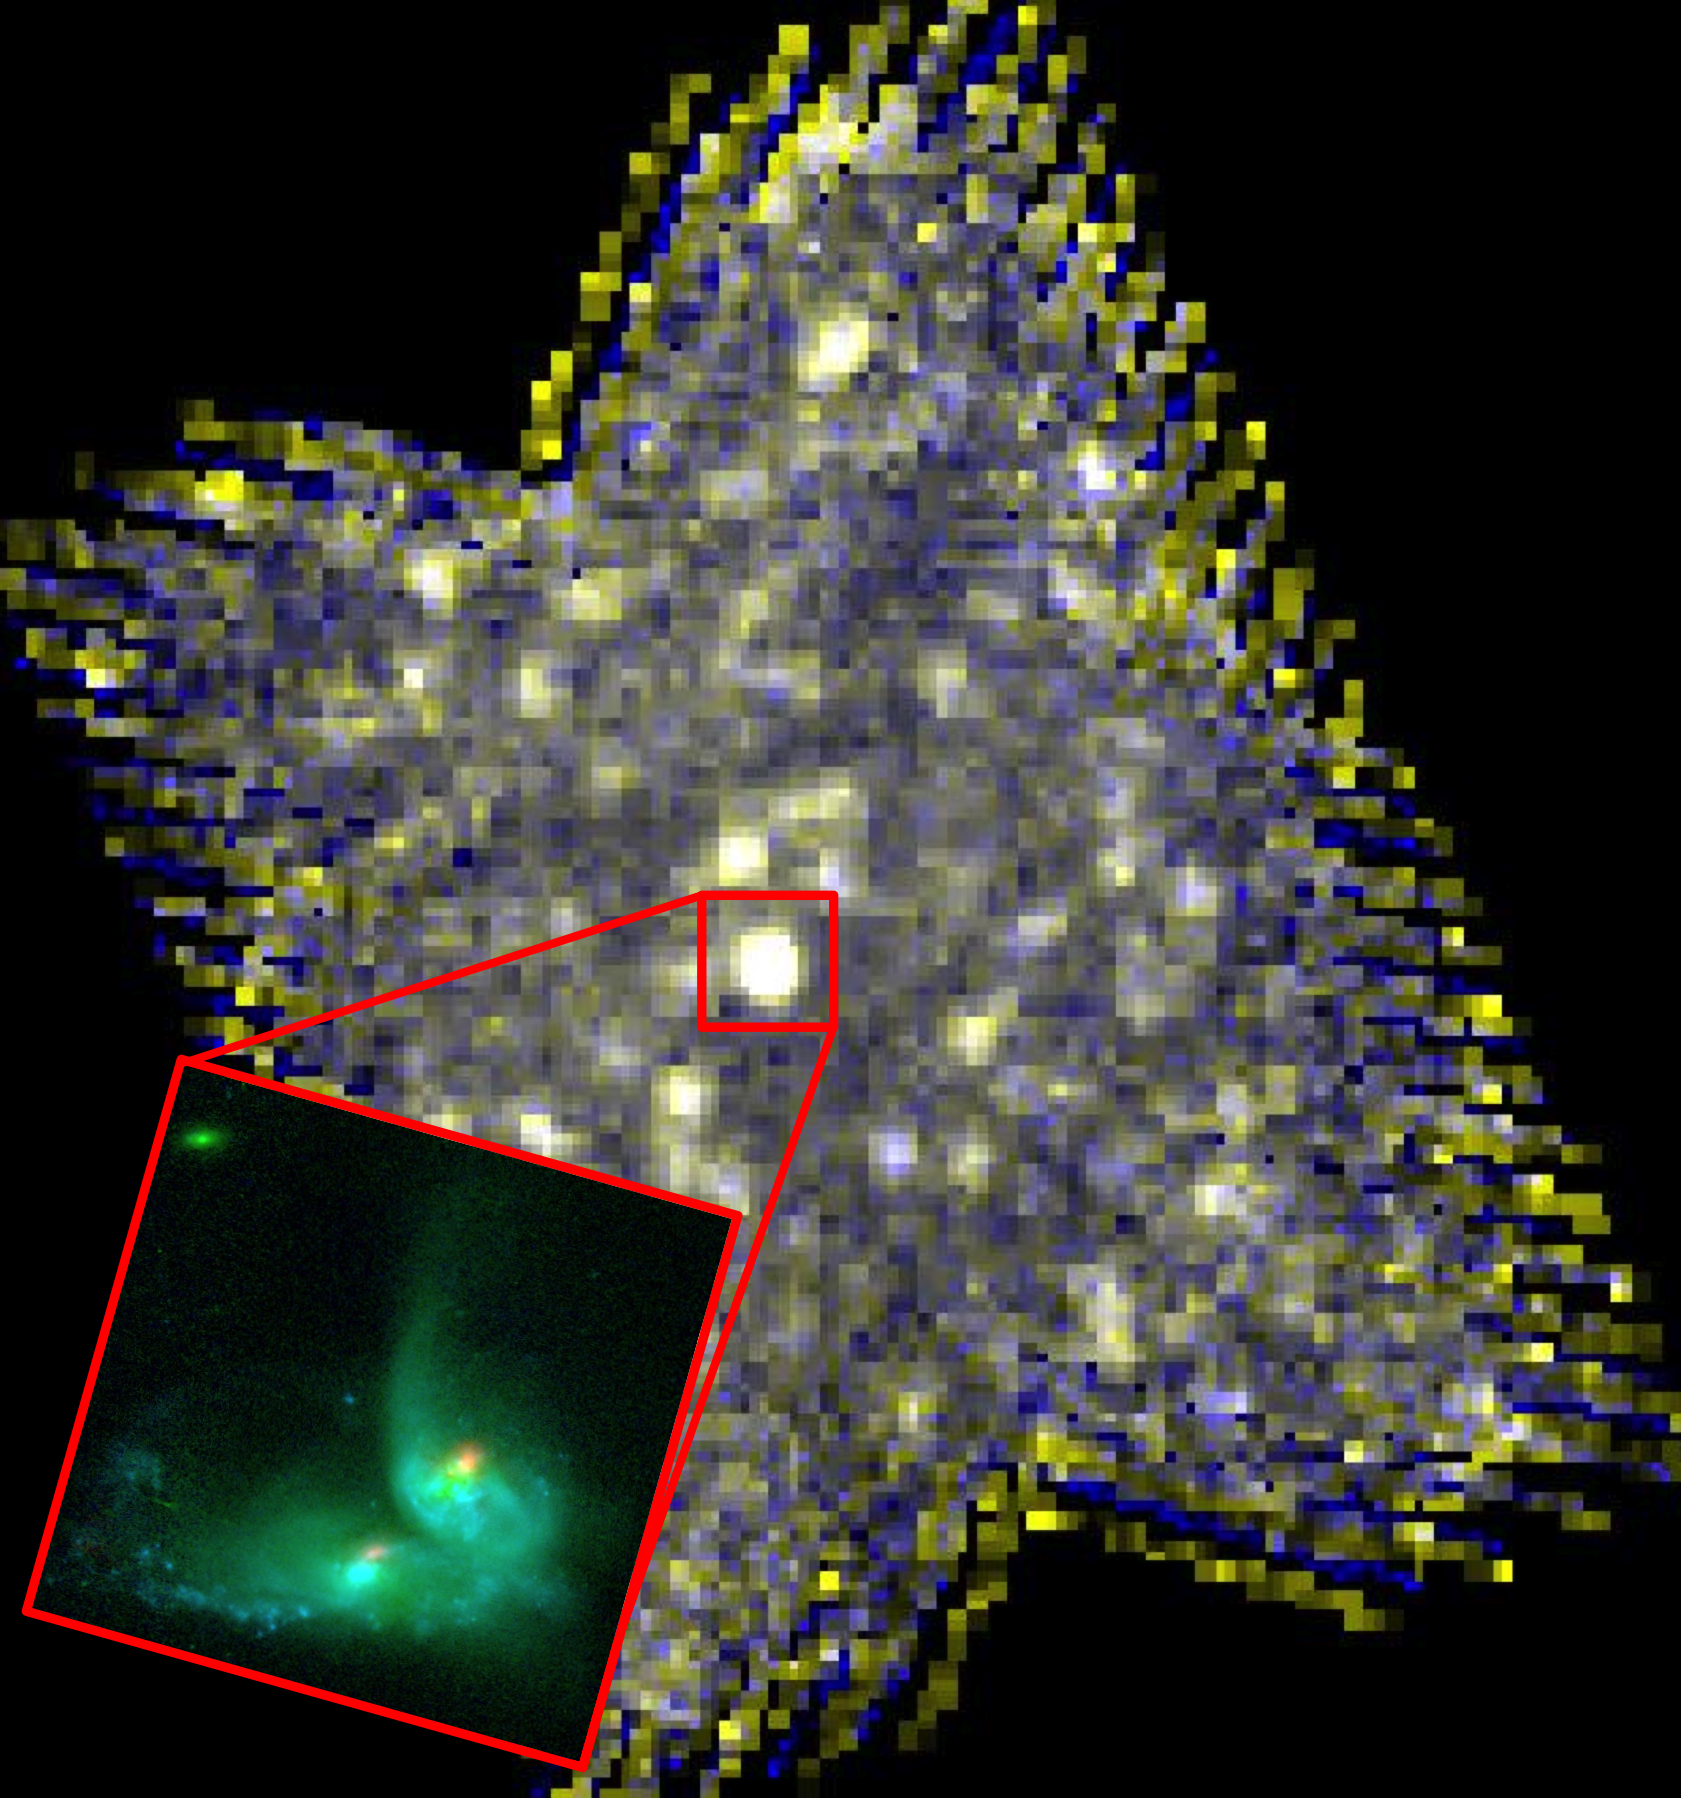 Herschel SPIRE image of IRAS 08572+3915